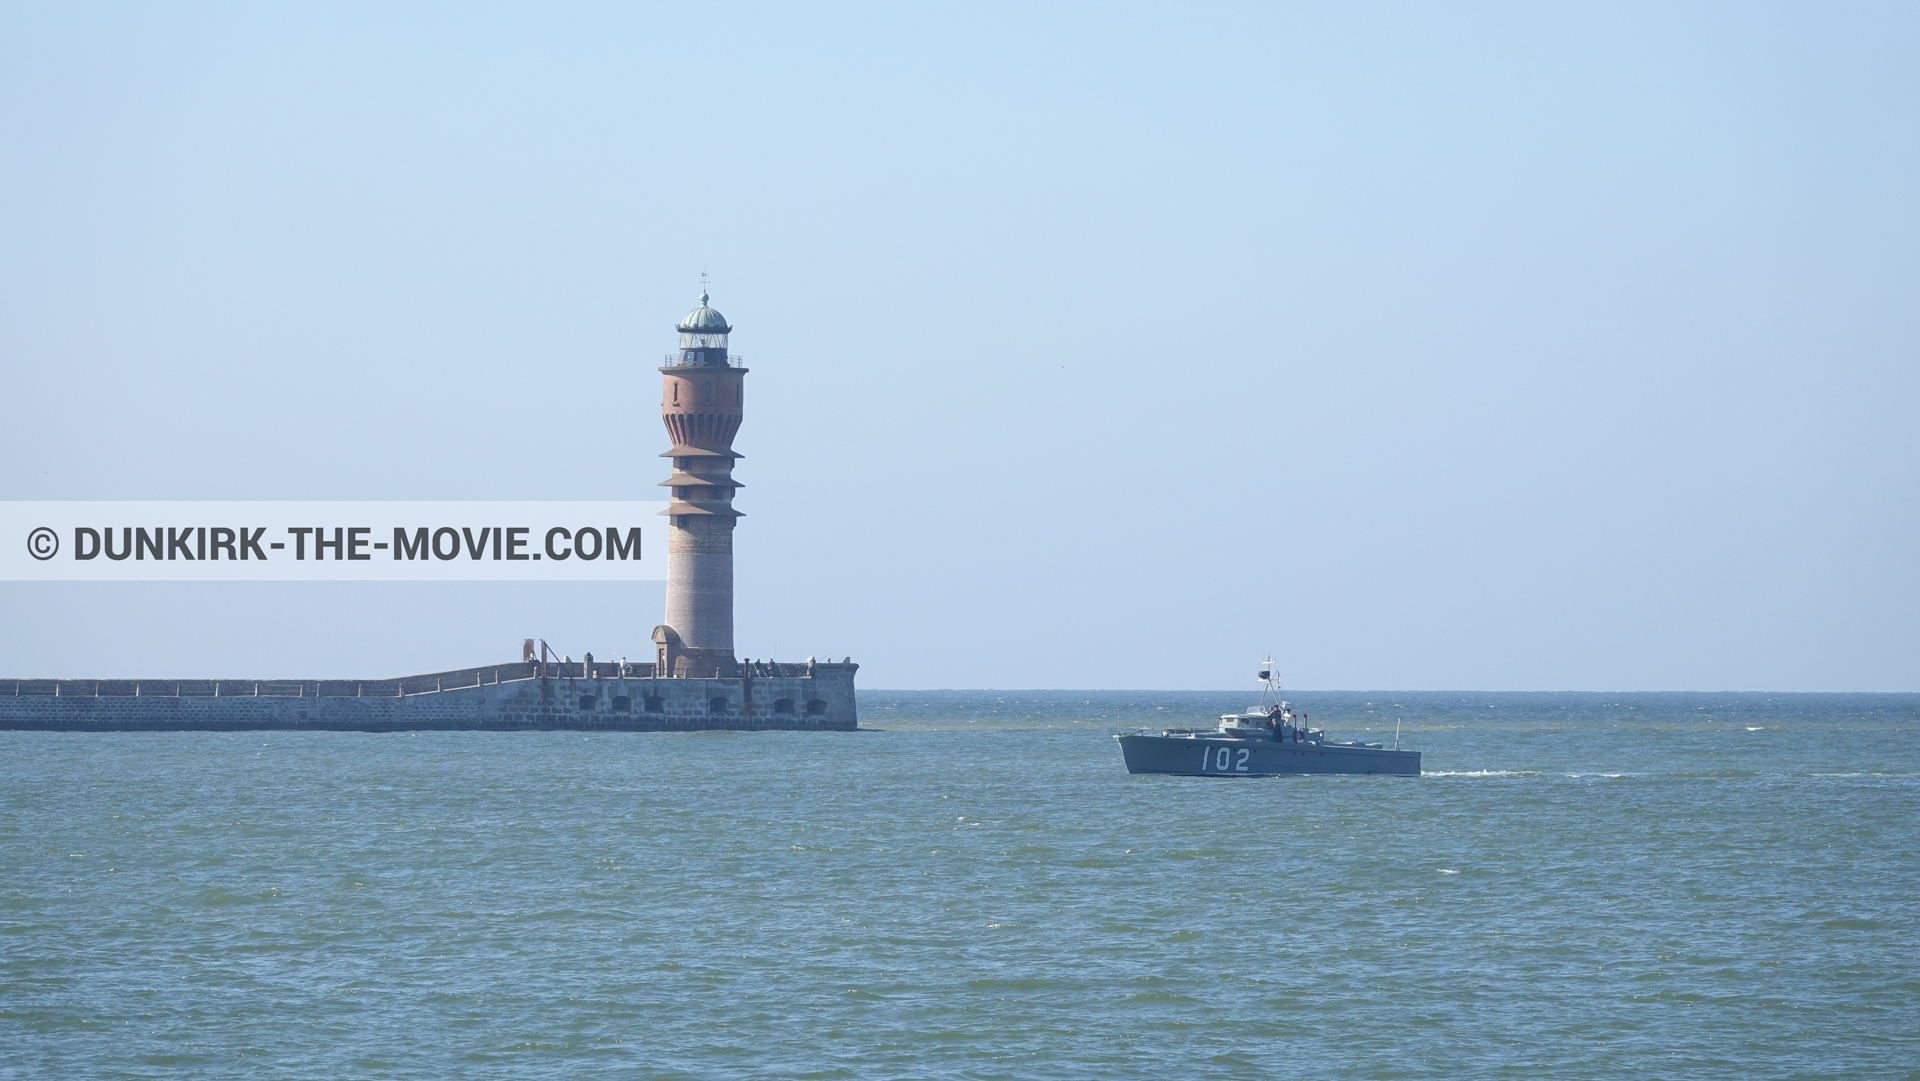 Fotos con barco, cielo azul, mares calma, faro de Saint-Pol-sur-Mer,  durante el rodaje de la película Dunkerque de Nolan